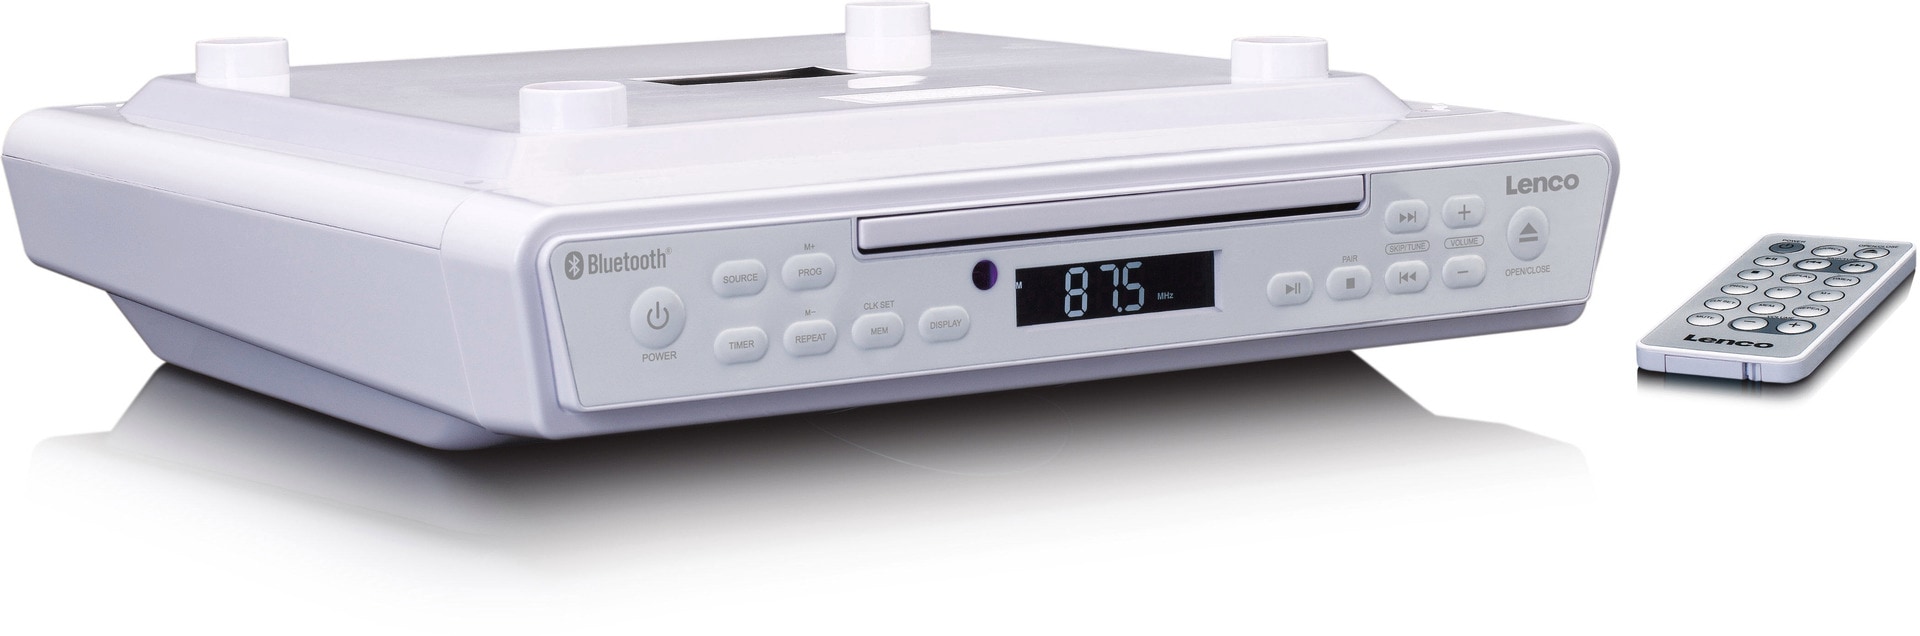 Weiß Cyberport mit KCR-150WH Lenco Küchenradio ++ CD-Player,